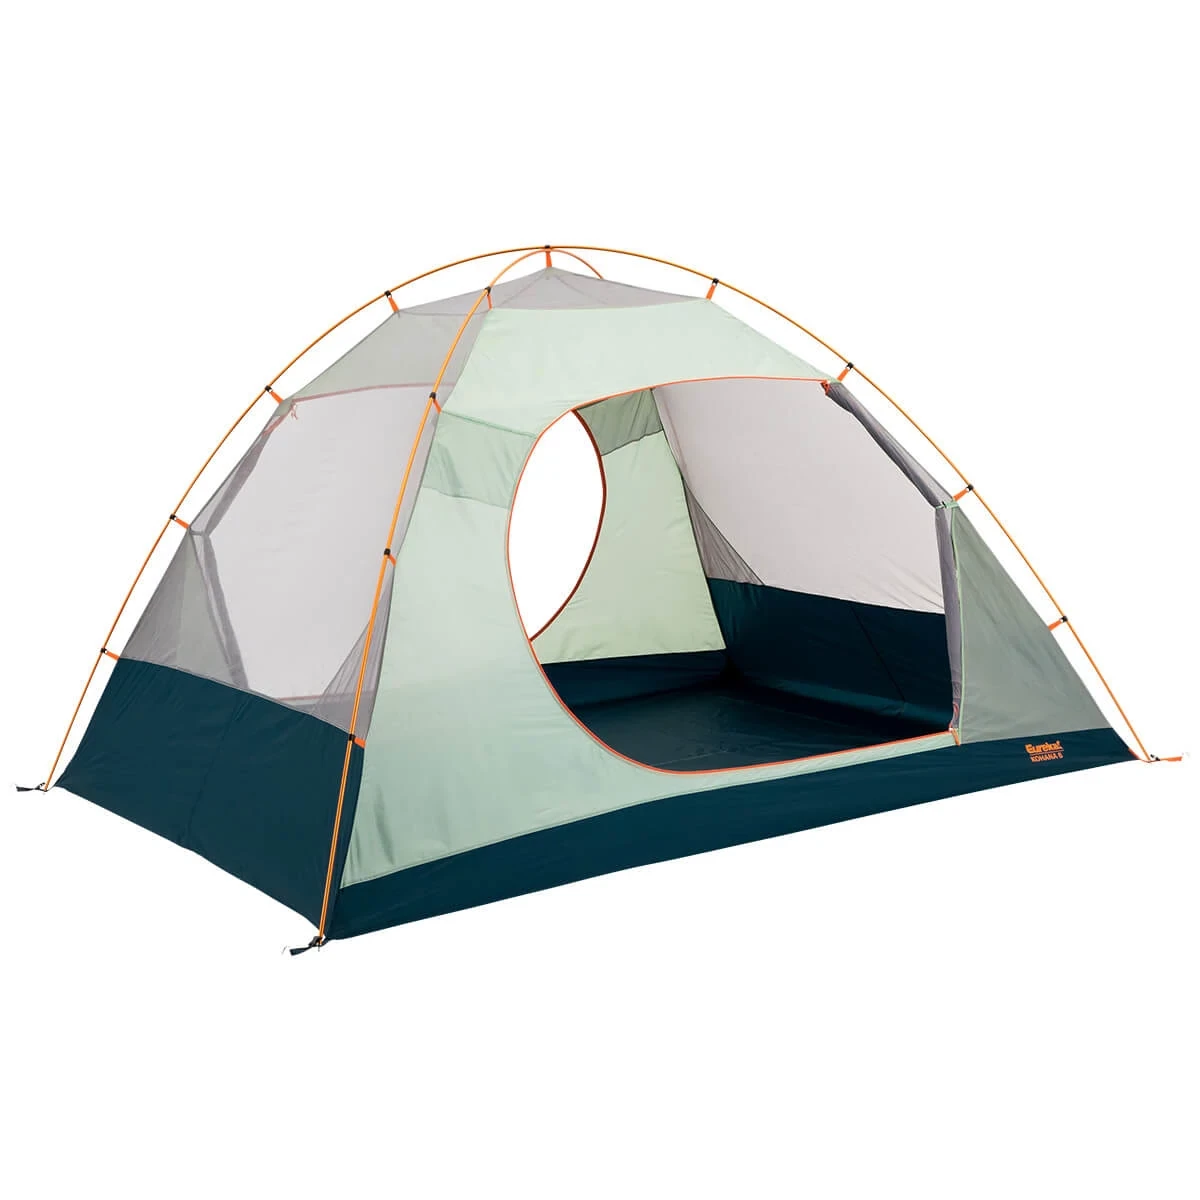 Kohana 6 tent with rainfly off and door open